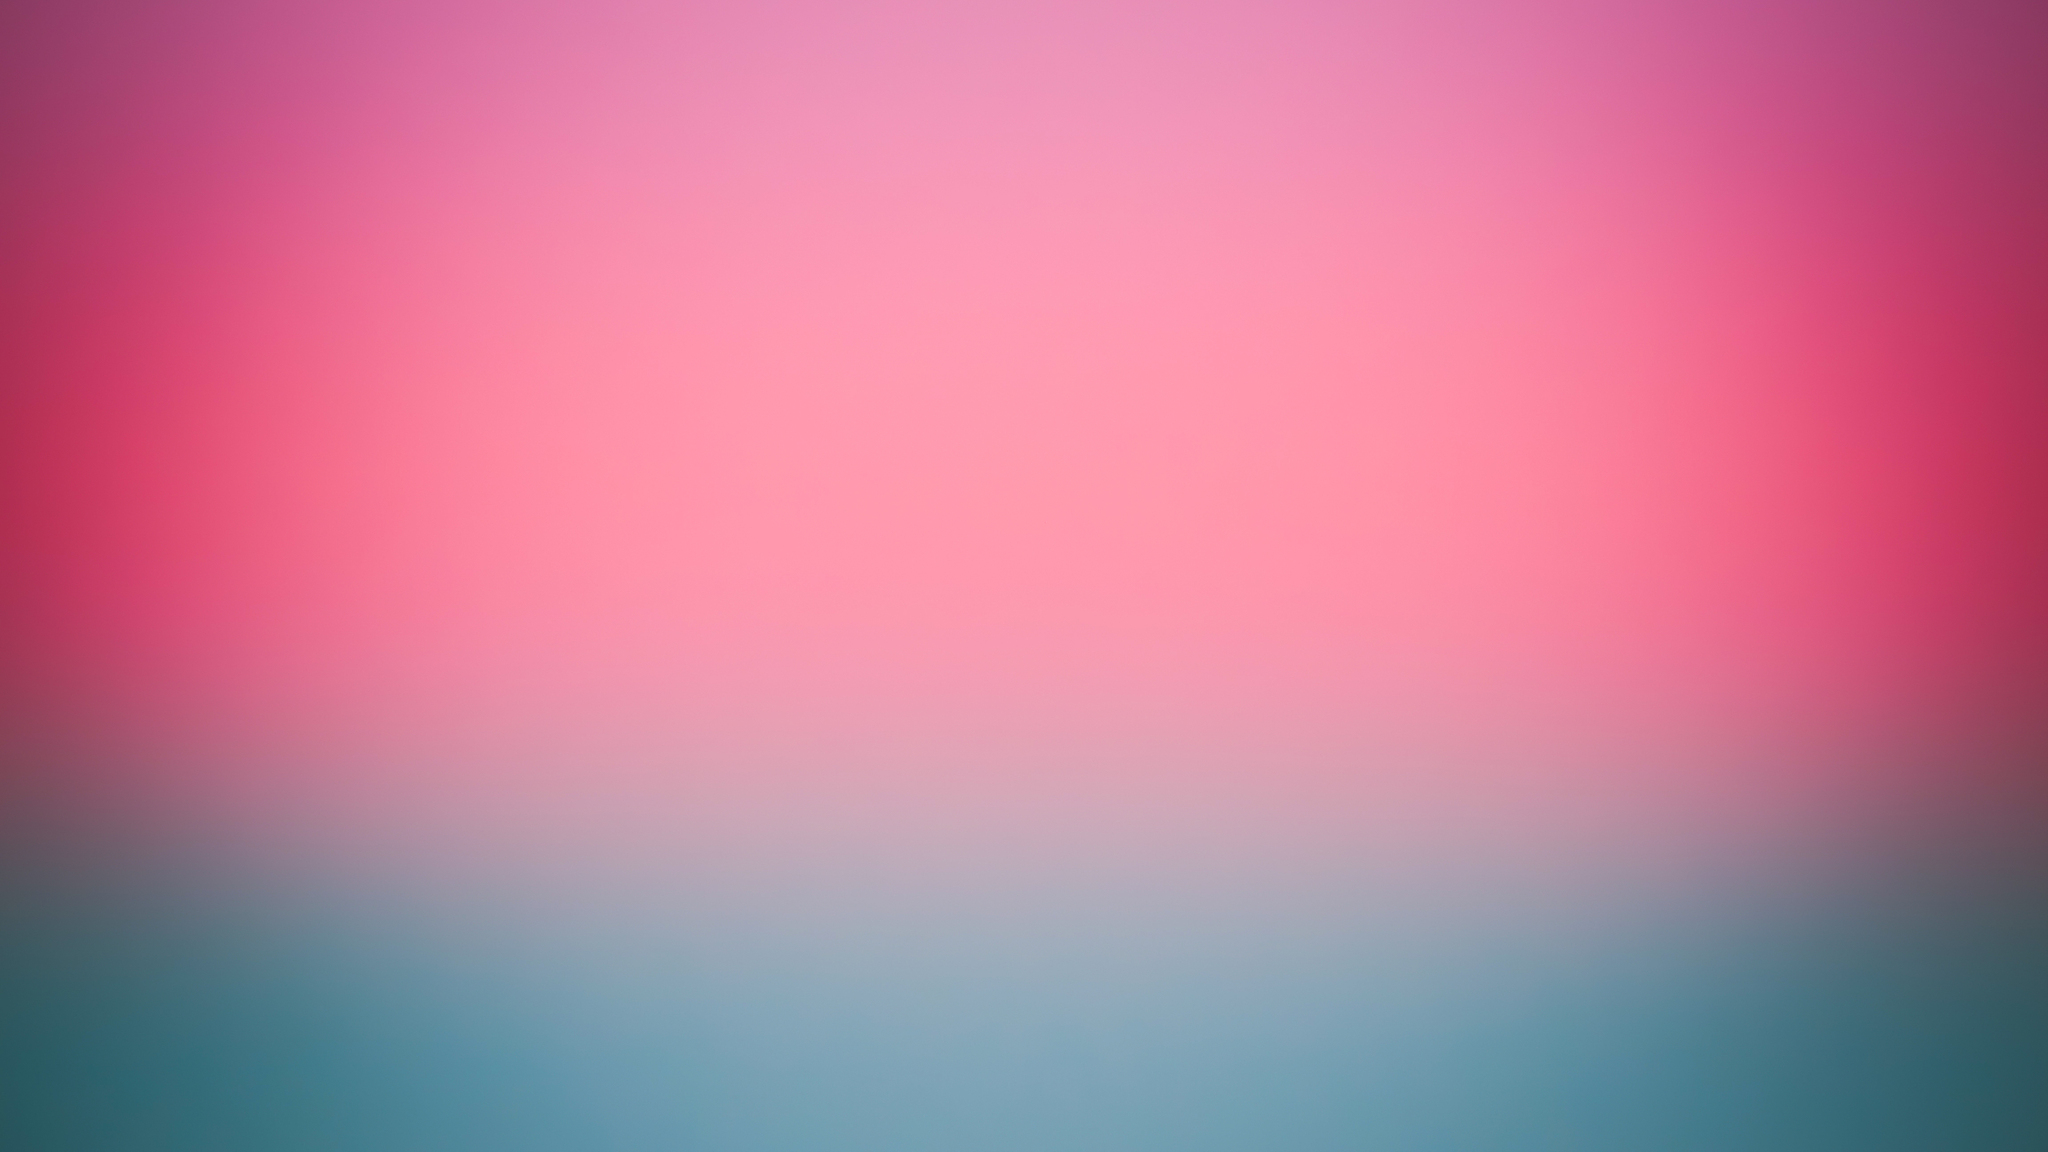 2048x1152 Pink Blur Background 2048x1152 Resolution Hd 4k